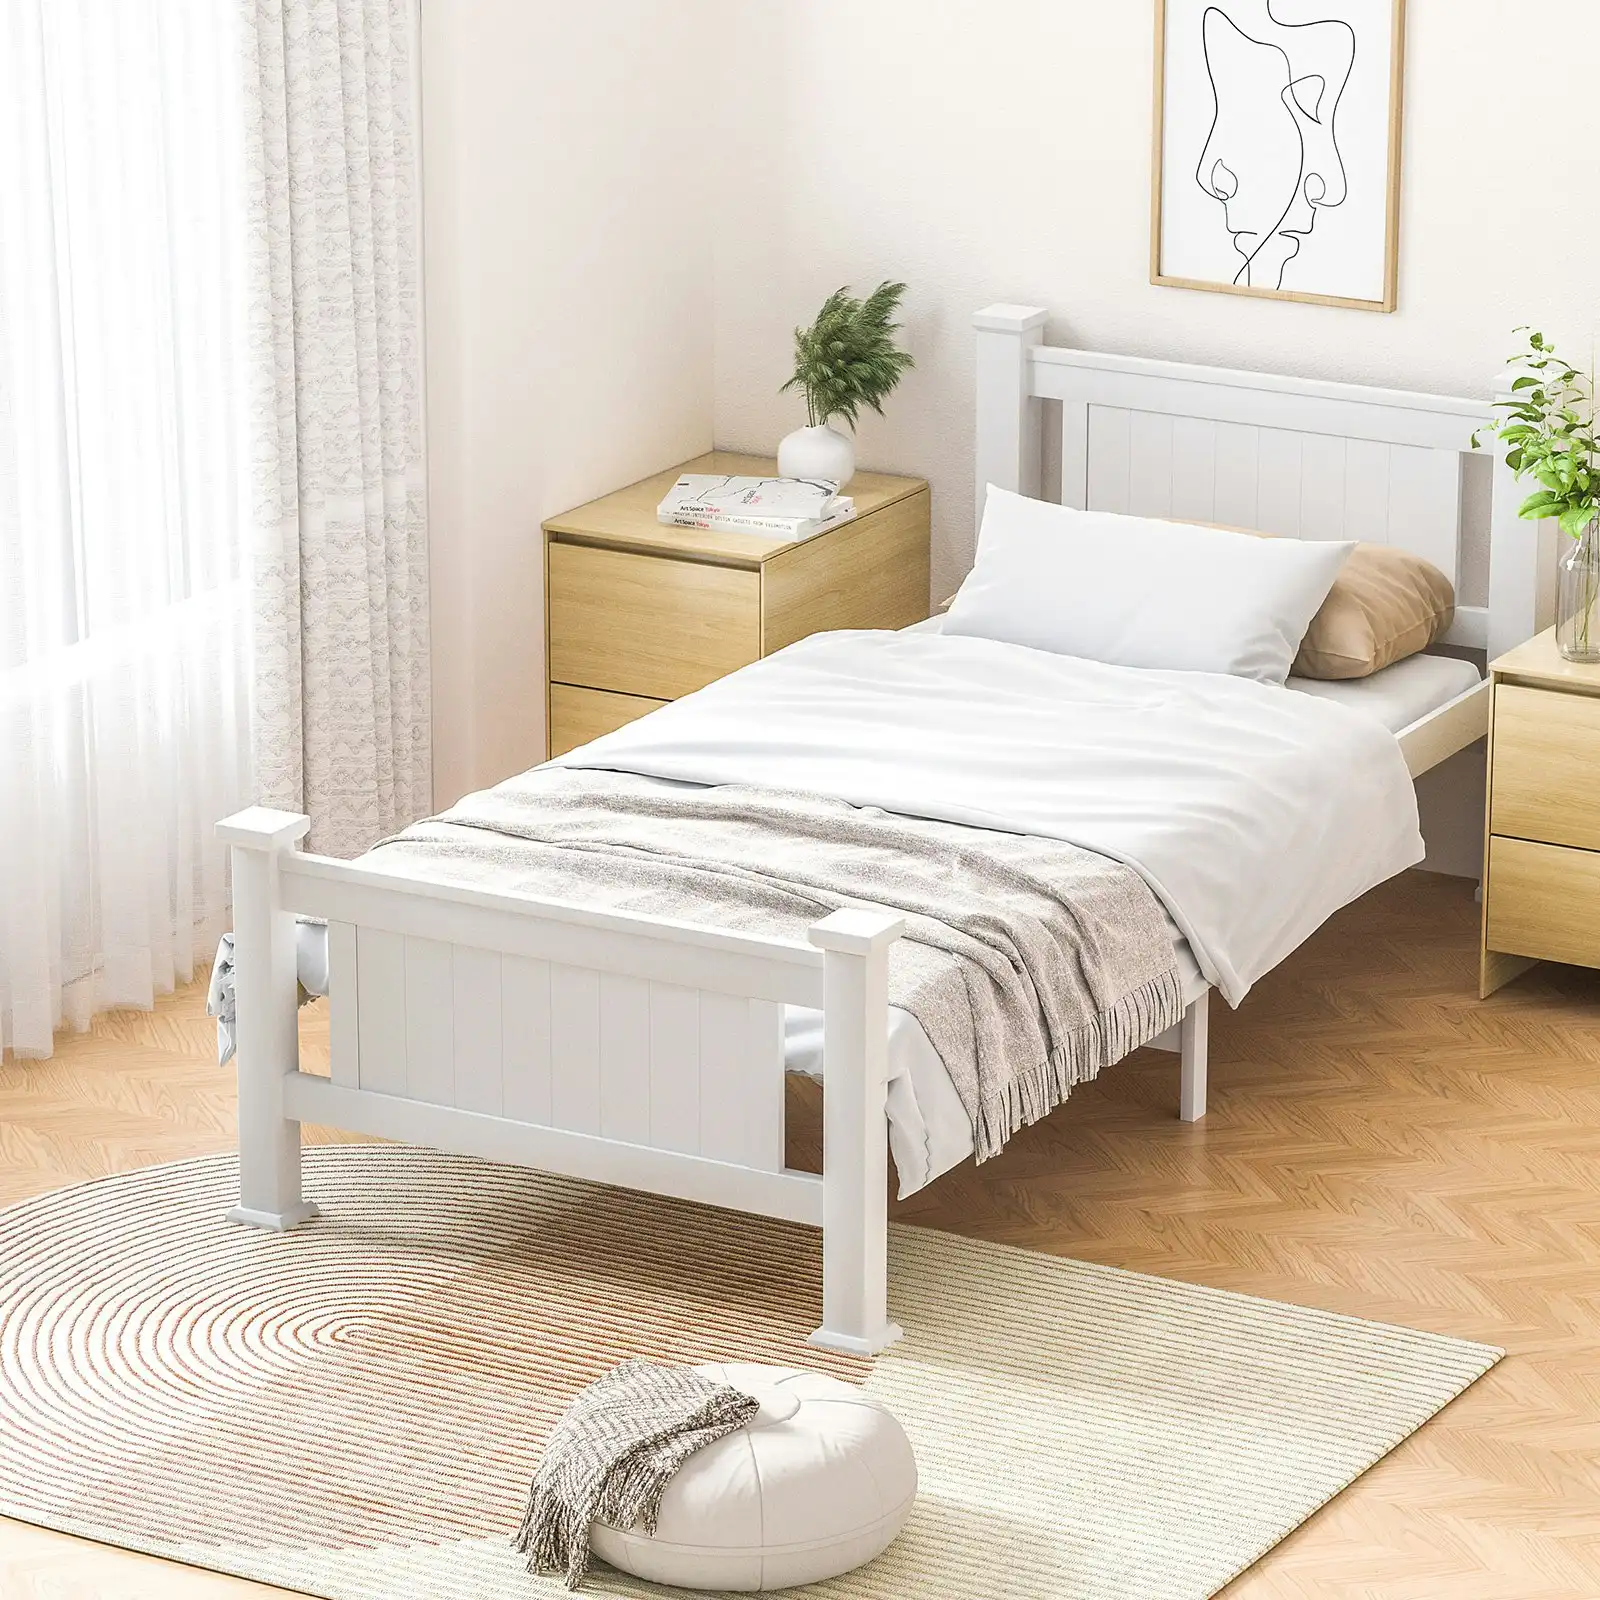 Oikiture Bed Frame Single Size Pine Wooden Timber Base Platform Bedroom